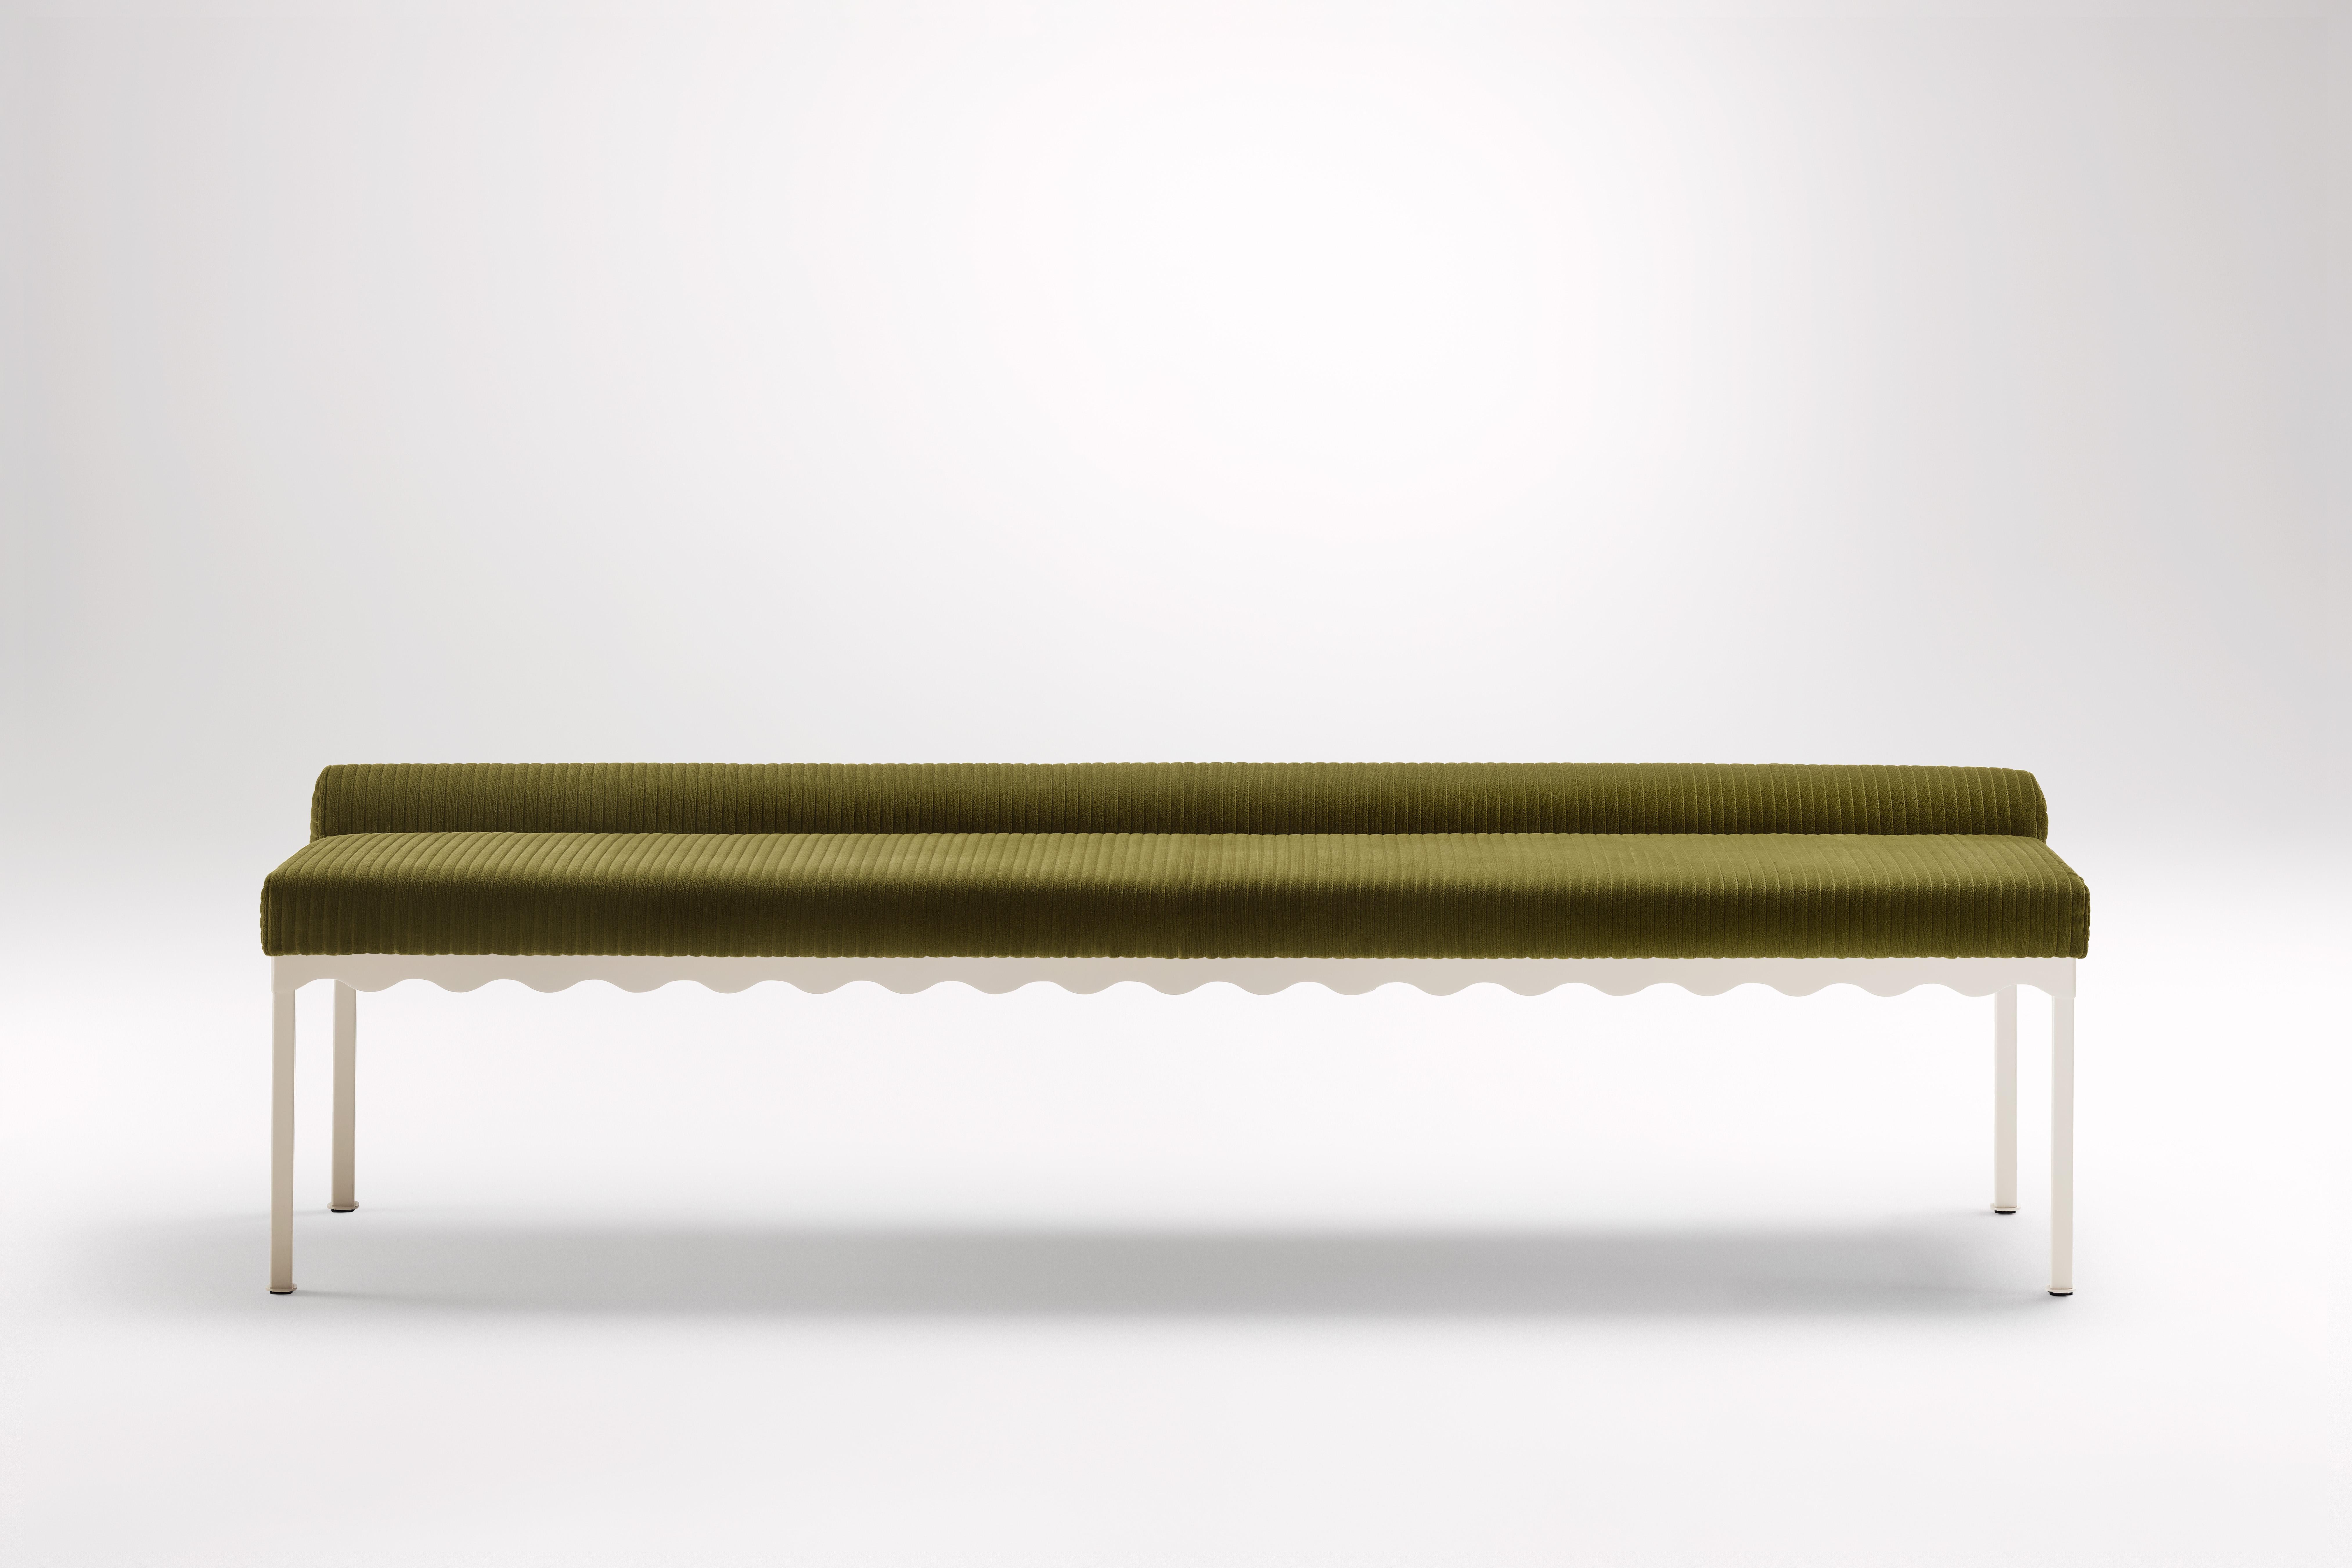 Banc Bellini 2040 de Coco Flip
Dimensions : D 204 x L 54 x H 52,5 cm
MATERIAL : Bois / Plateaux rembourrés, Cadre en acier peint par poudrage. 
Poids : 30 kg
Finitions du cadre : Textura Paperbark.

Coco Flip est un studio de design de meubles et de